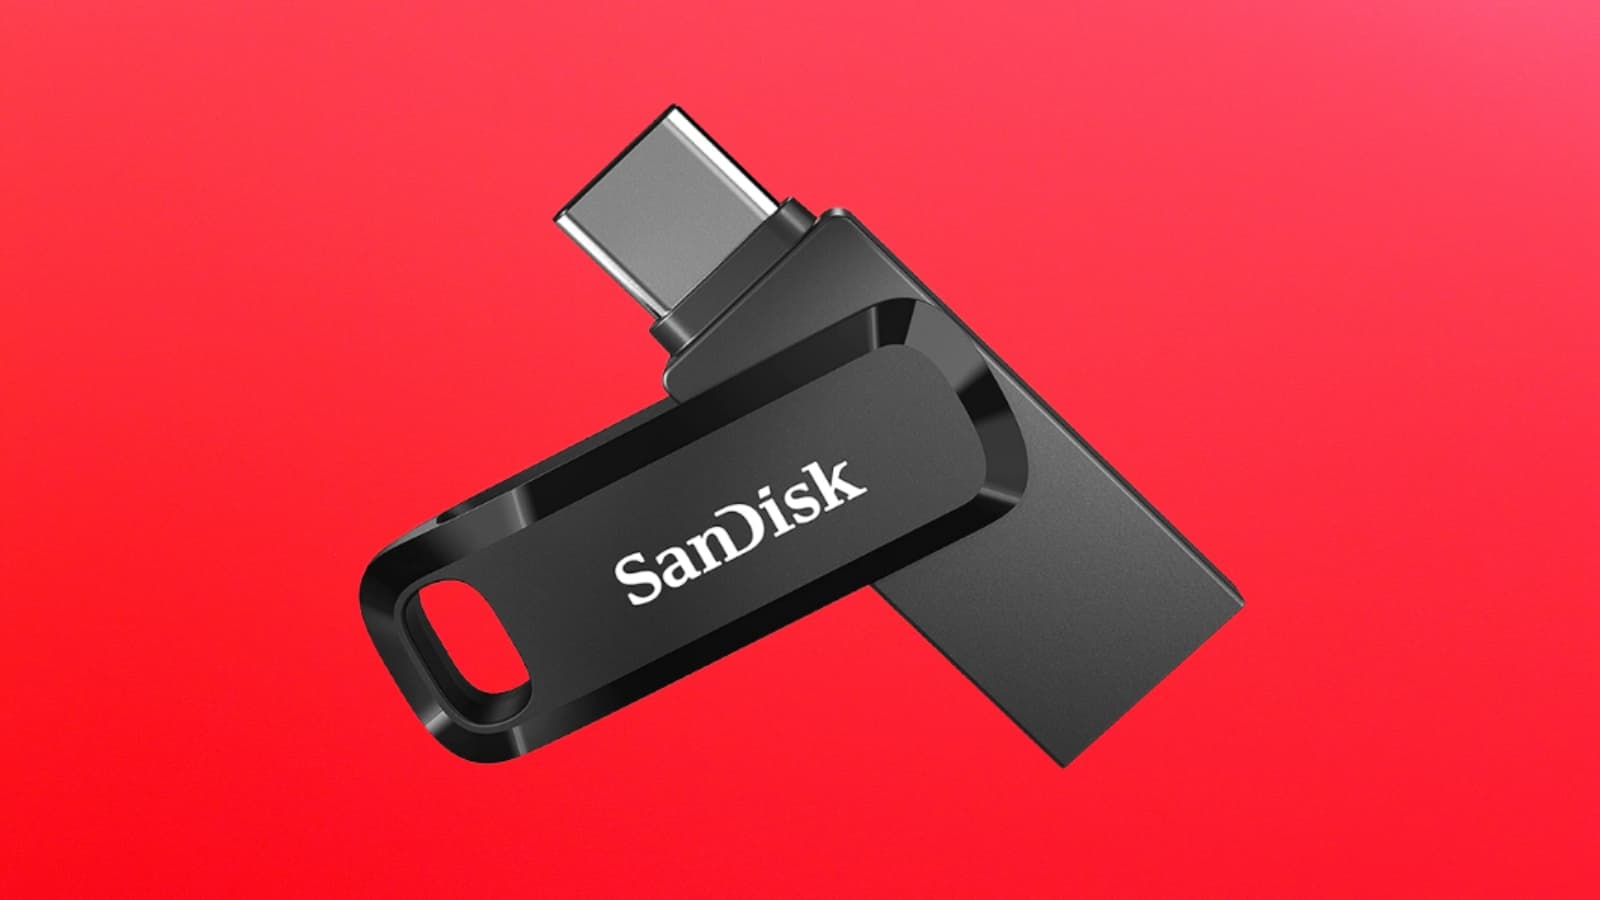 SanDisk : cette clé USB 256 Go profite d'une réduction exceptionnelle